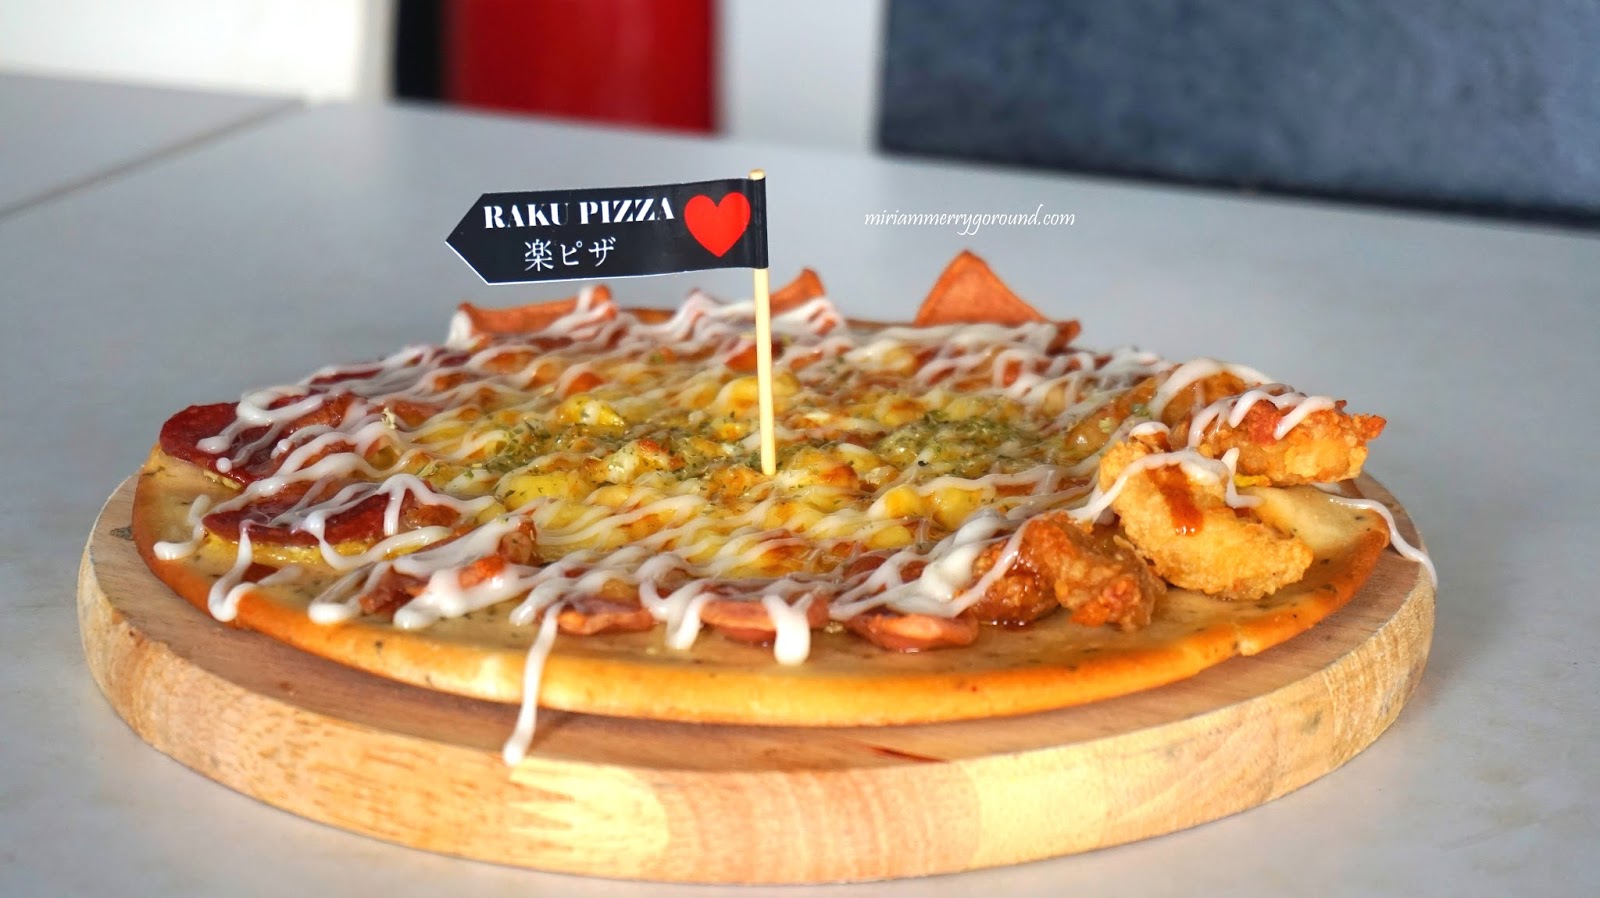 Raku Pizza - Build Your Own Pizza | ♥Miriam MerryGoRound♥